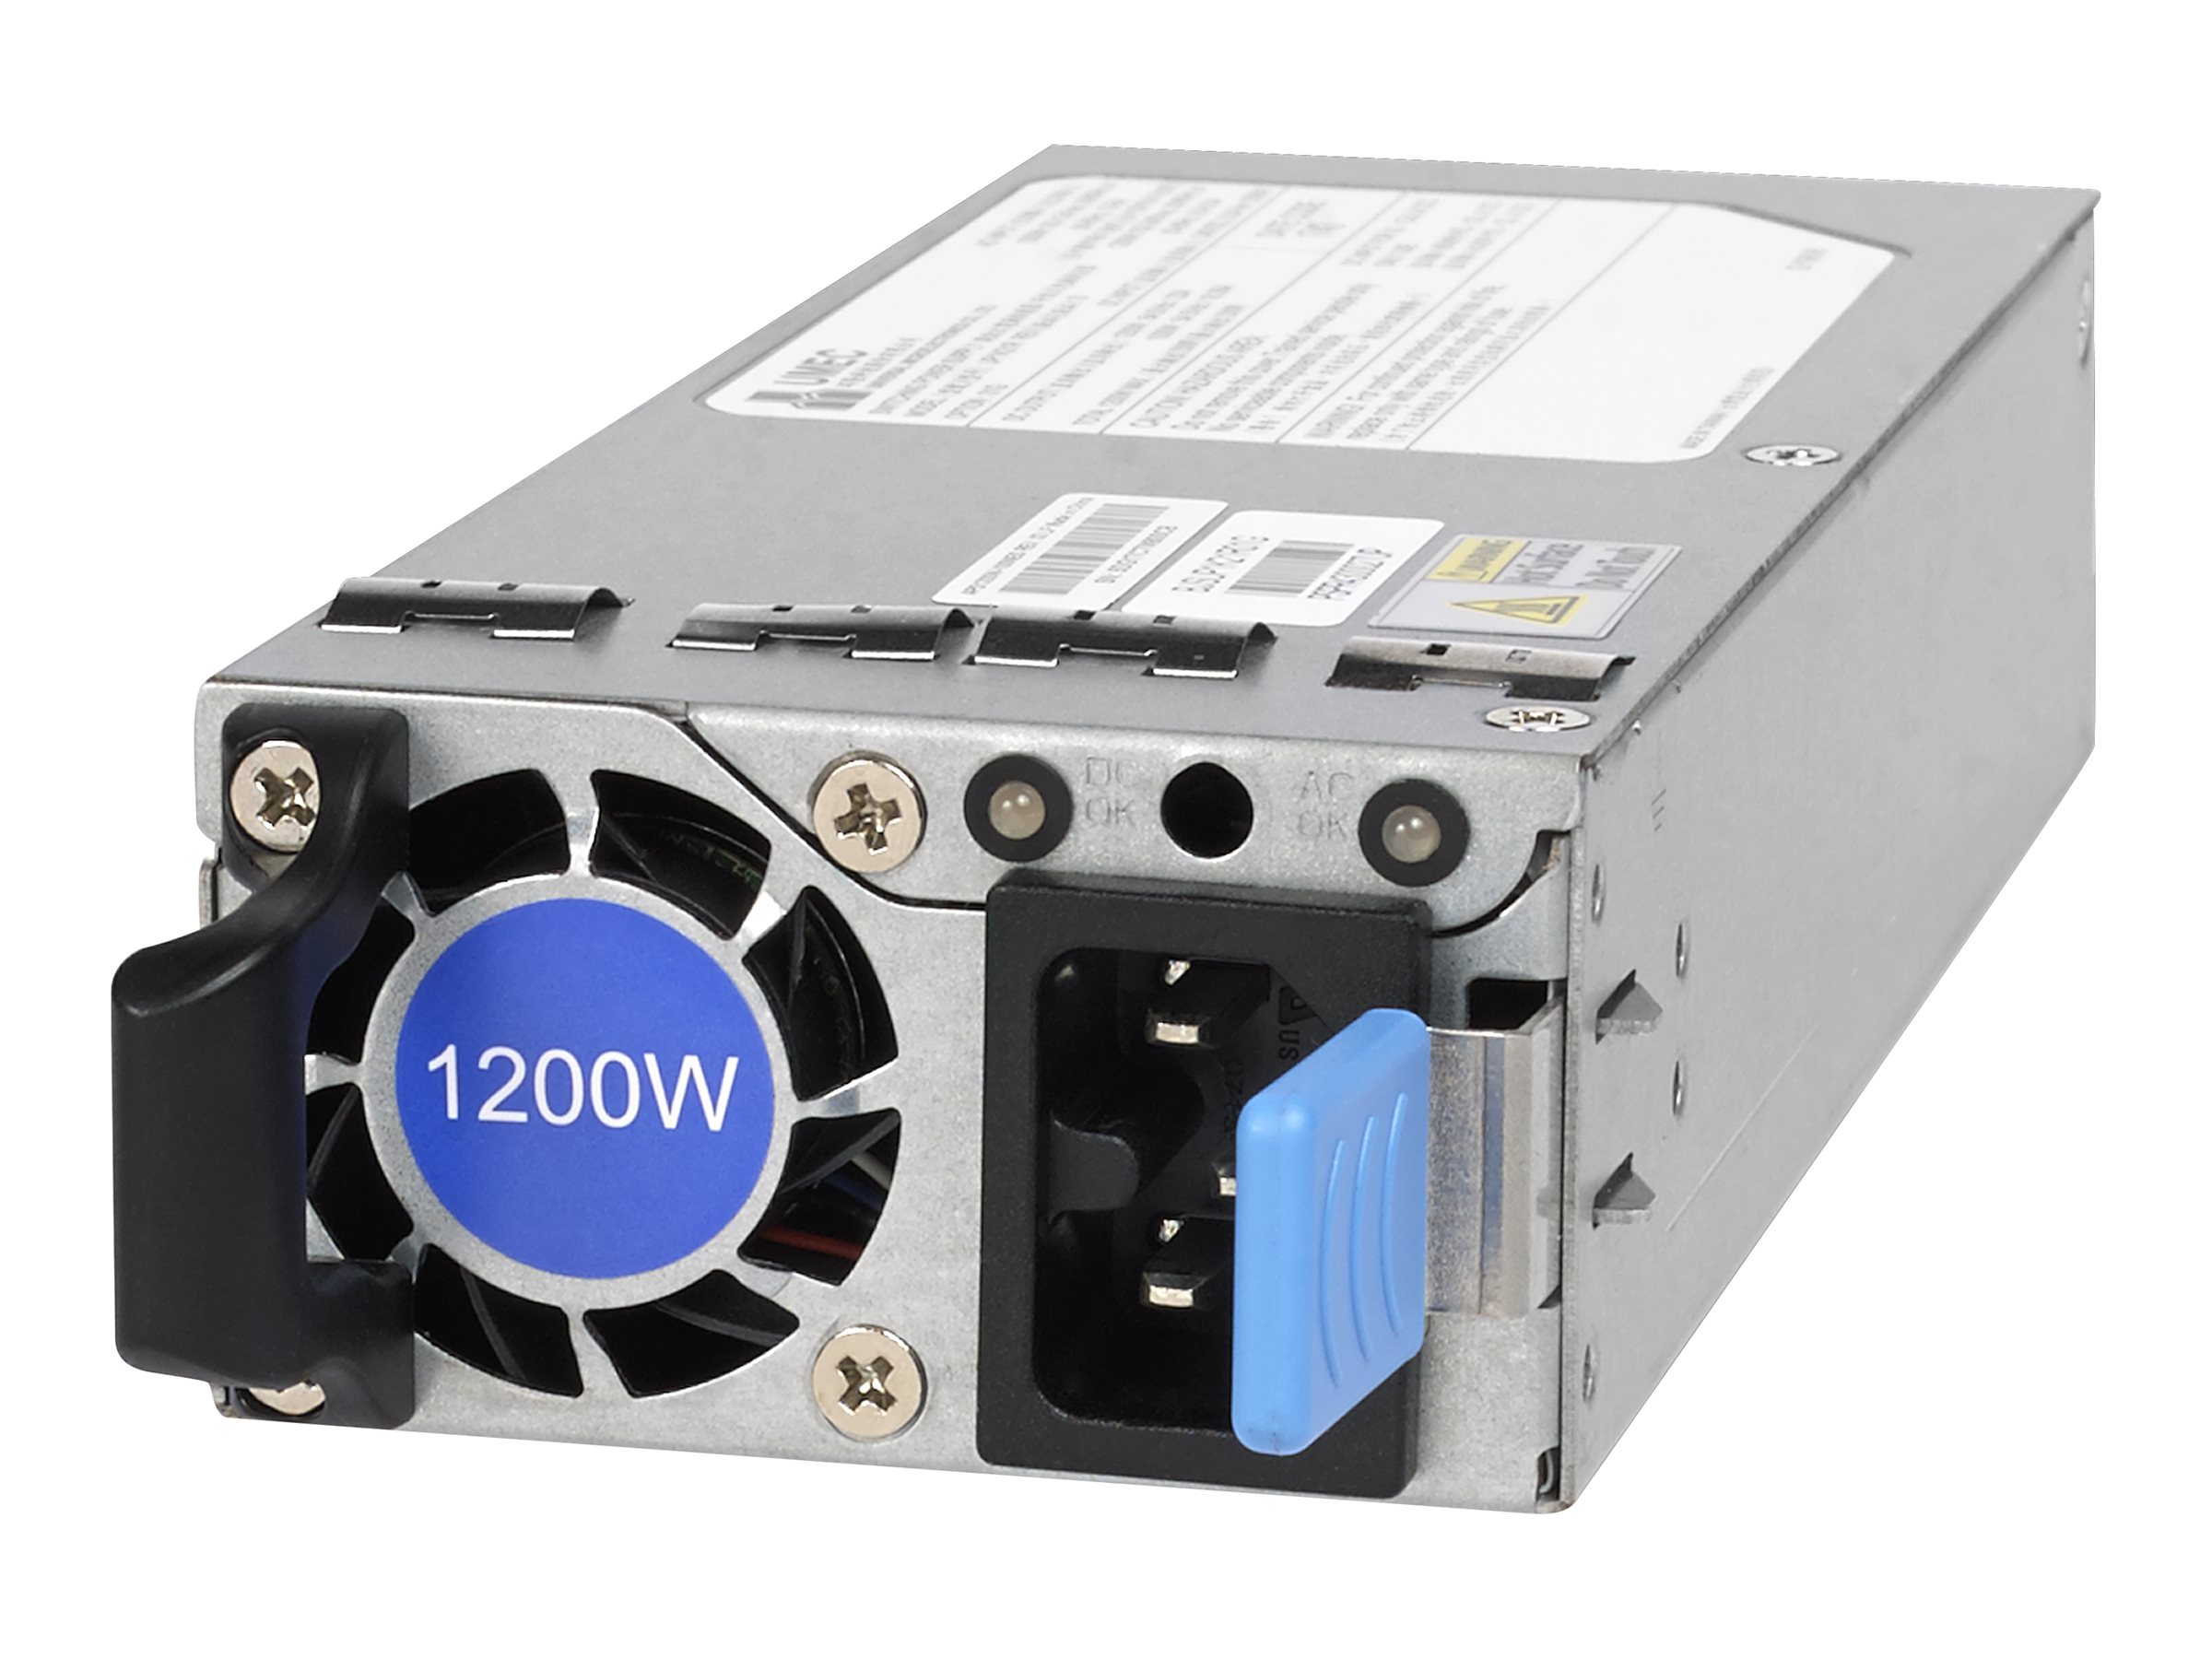 NETGEAR APS1200W – Power supply